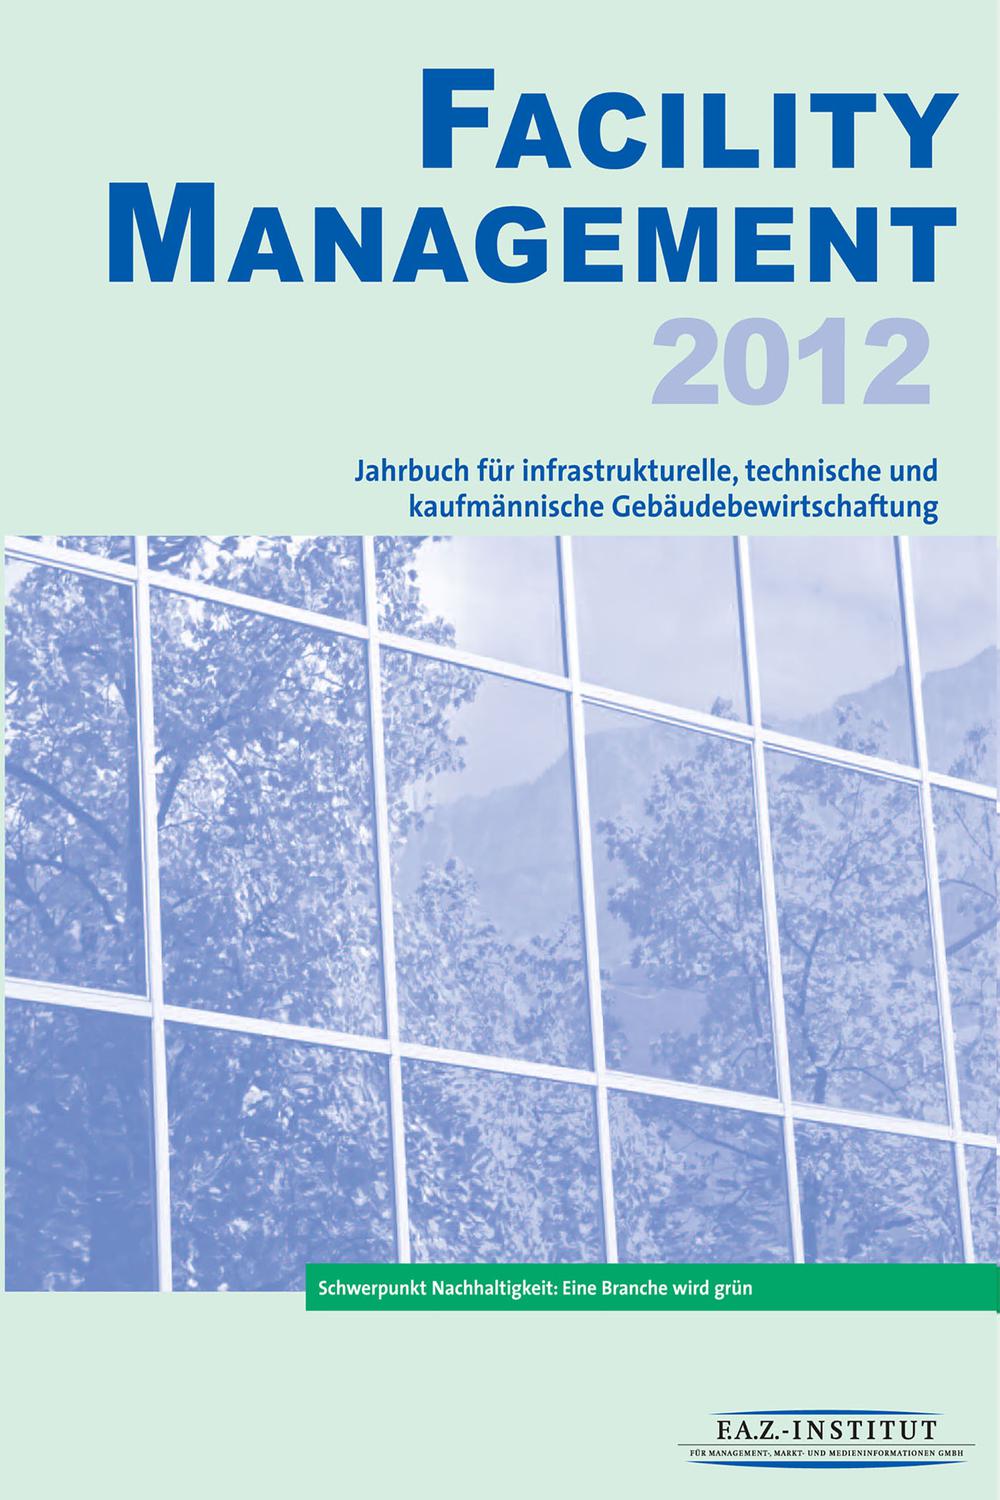 Facility Management 2012 - F.A.Z.-Institut für Management-, Markt- und Medieninformationen